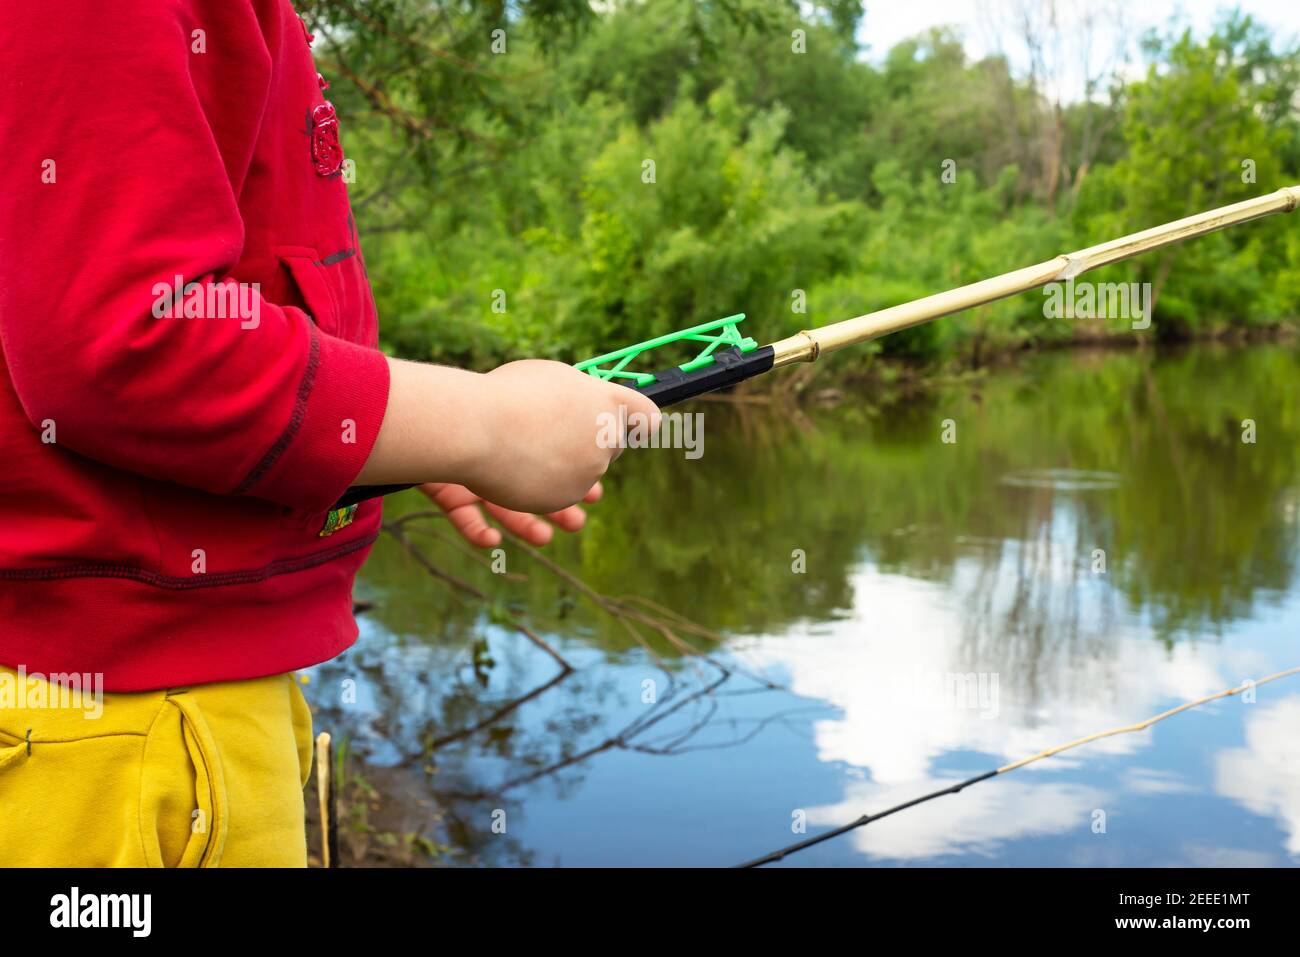 Las manos de los niños están sosteniendo una caña de pescar. Árboles verdes y un reservorio natural. Foto de stock